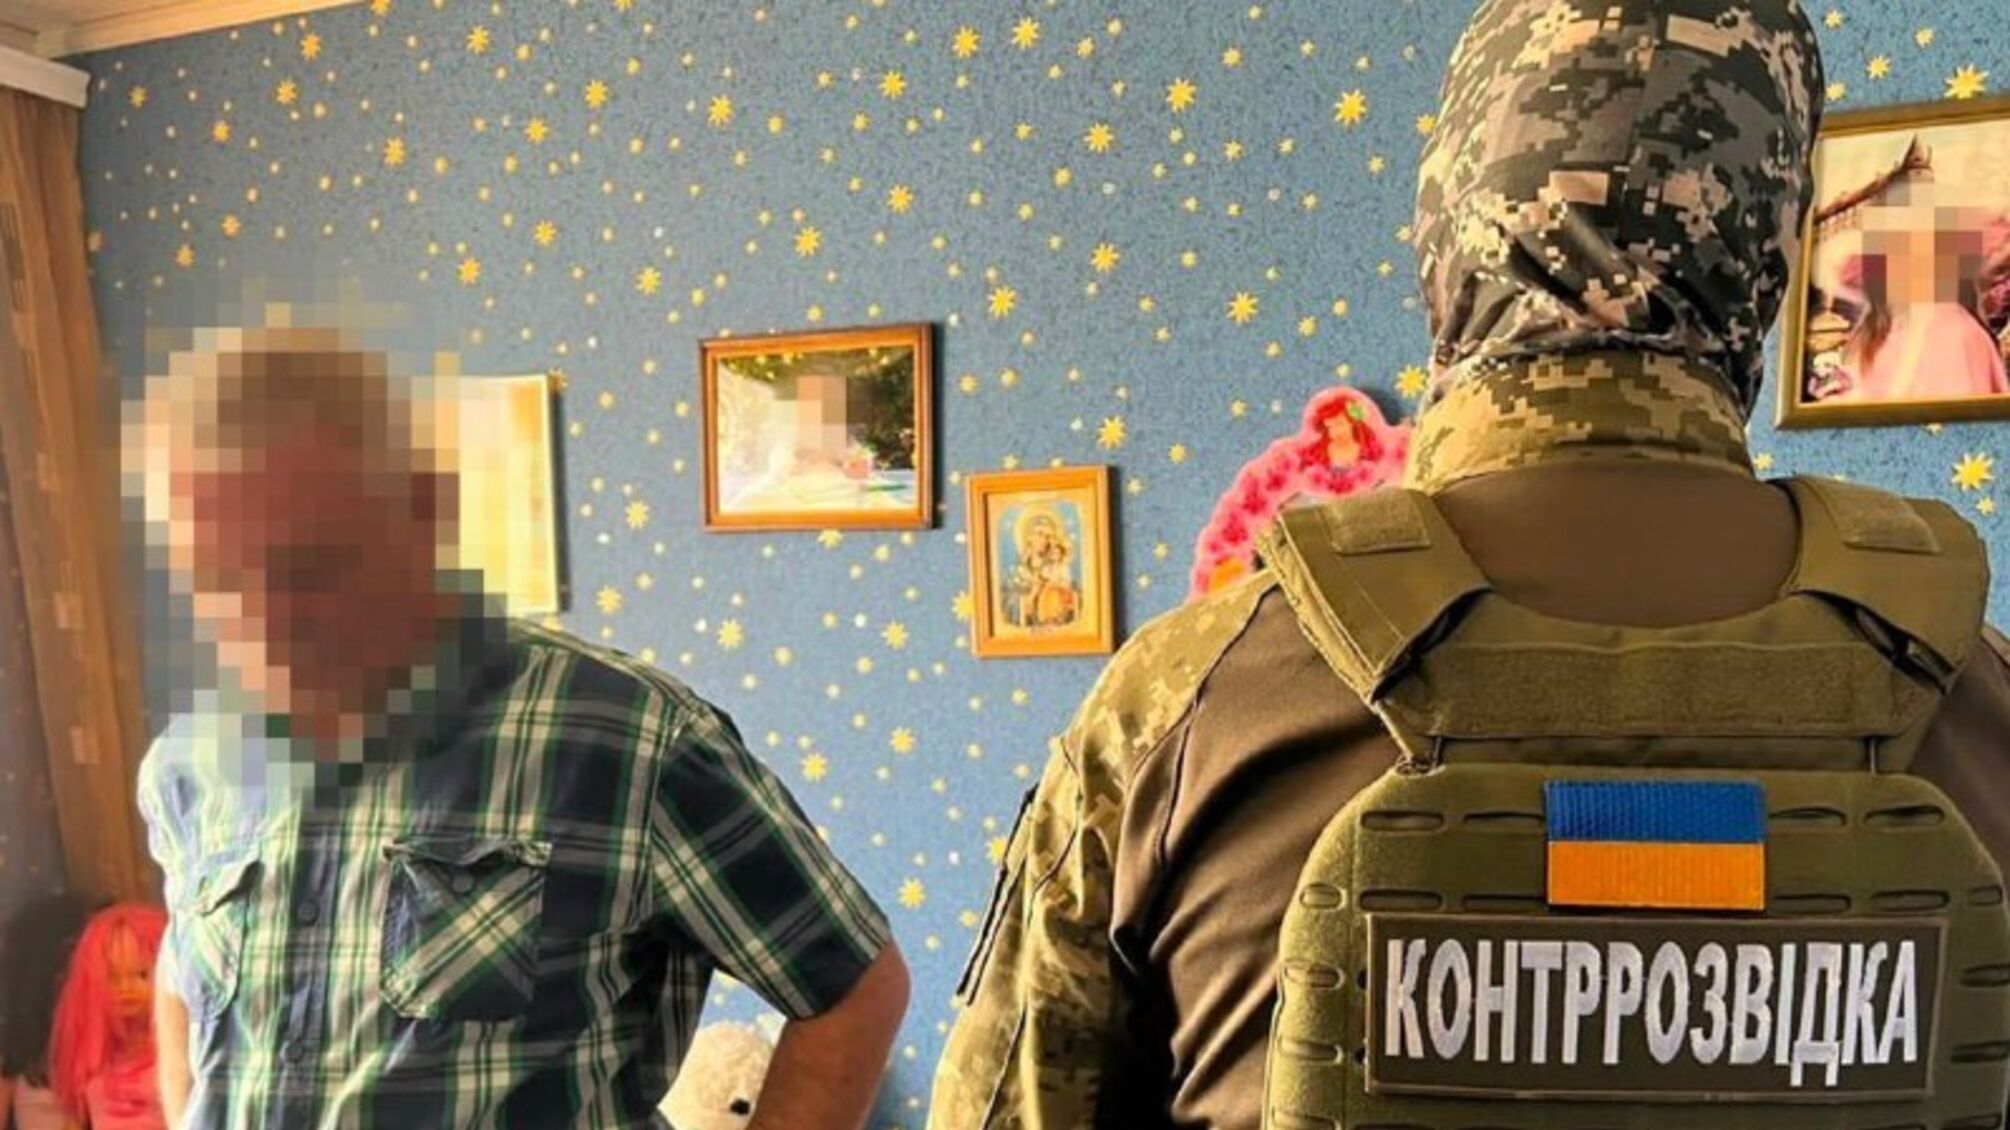 Агент ФСБ прятал оружие под детской кроватью для совершения терактов в Запорожье